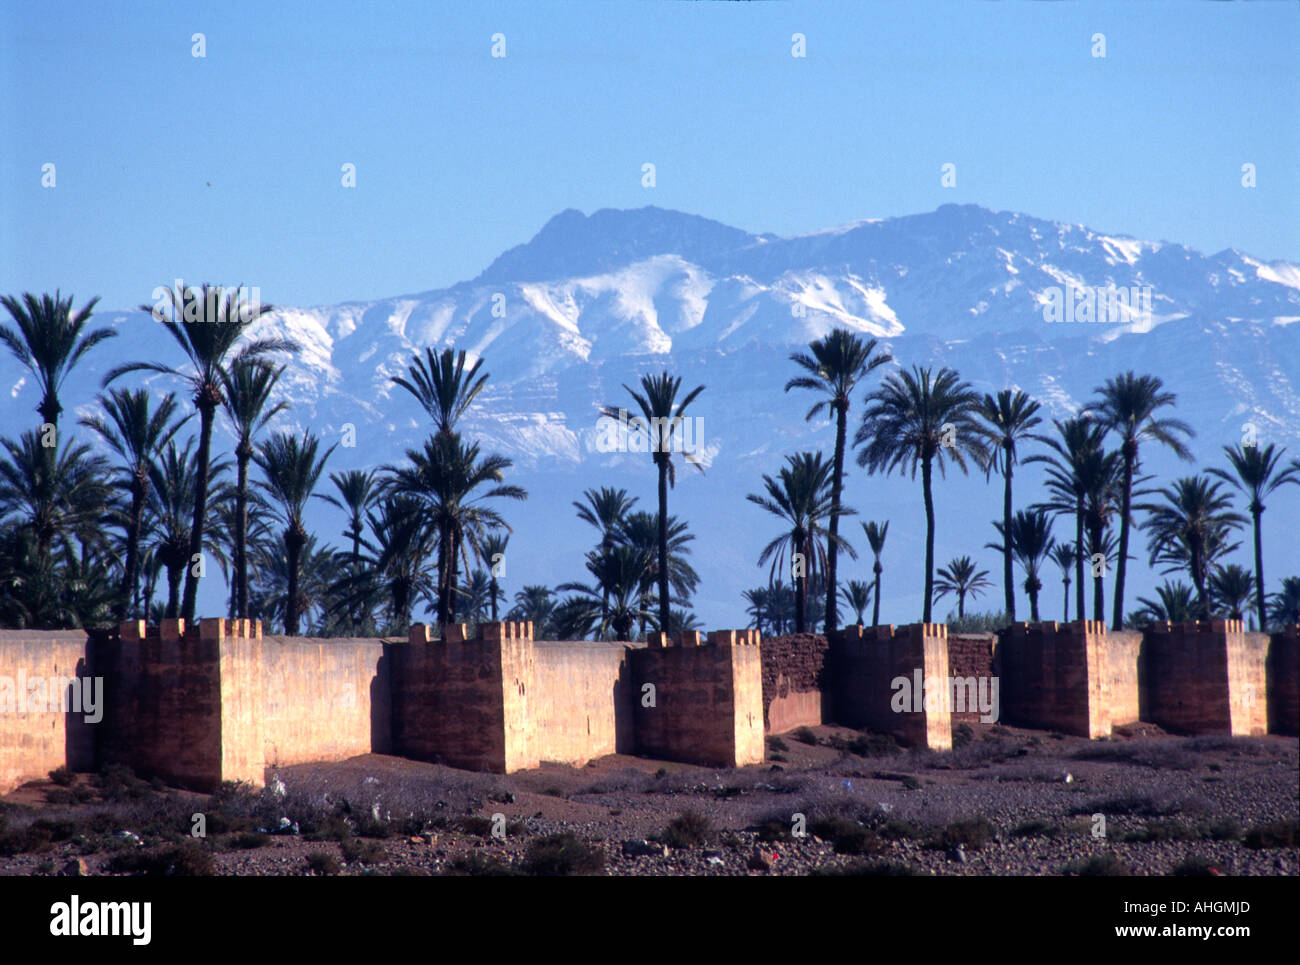 Jardin Agdal giardino pareti con palme contro le montagne innevate dell'Atlante, Marrakech, Marocco Foto Stock